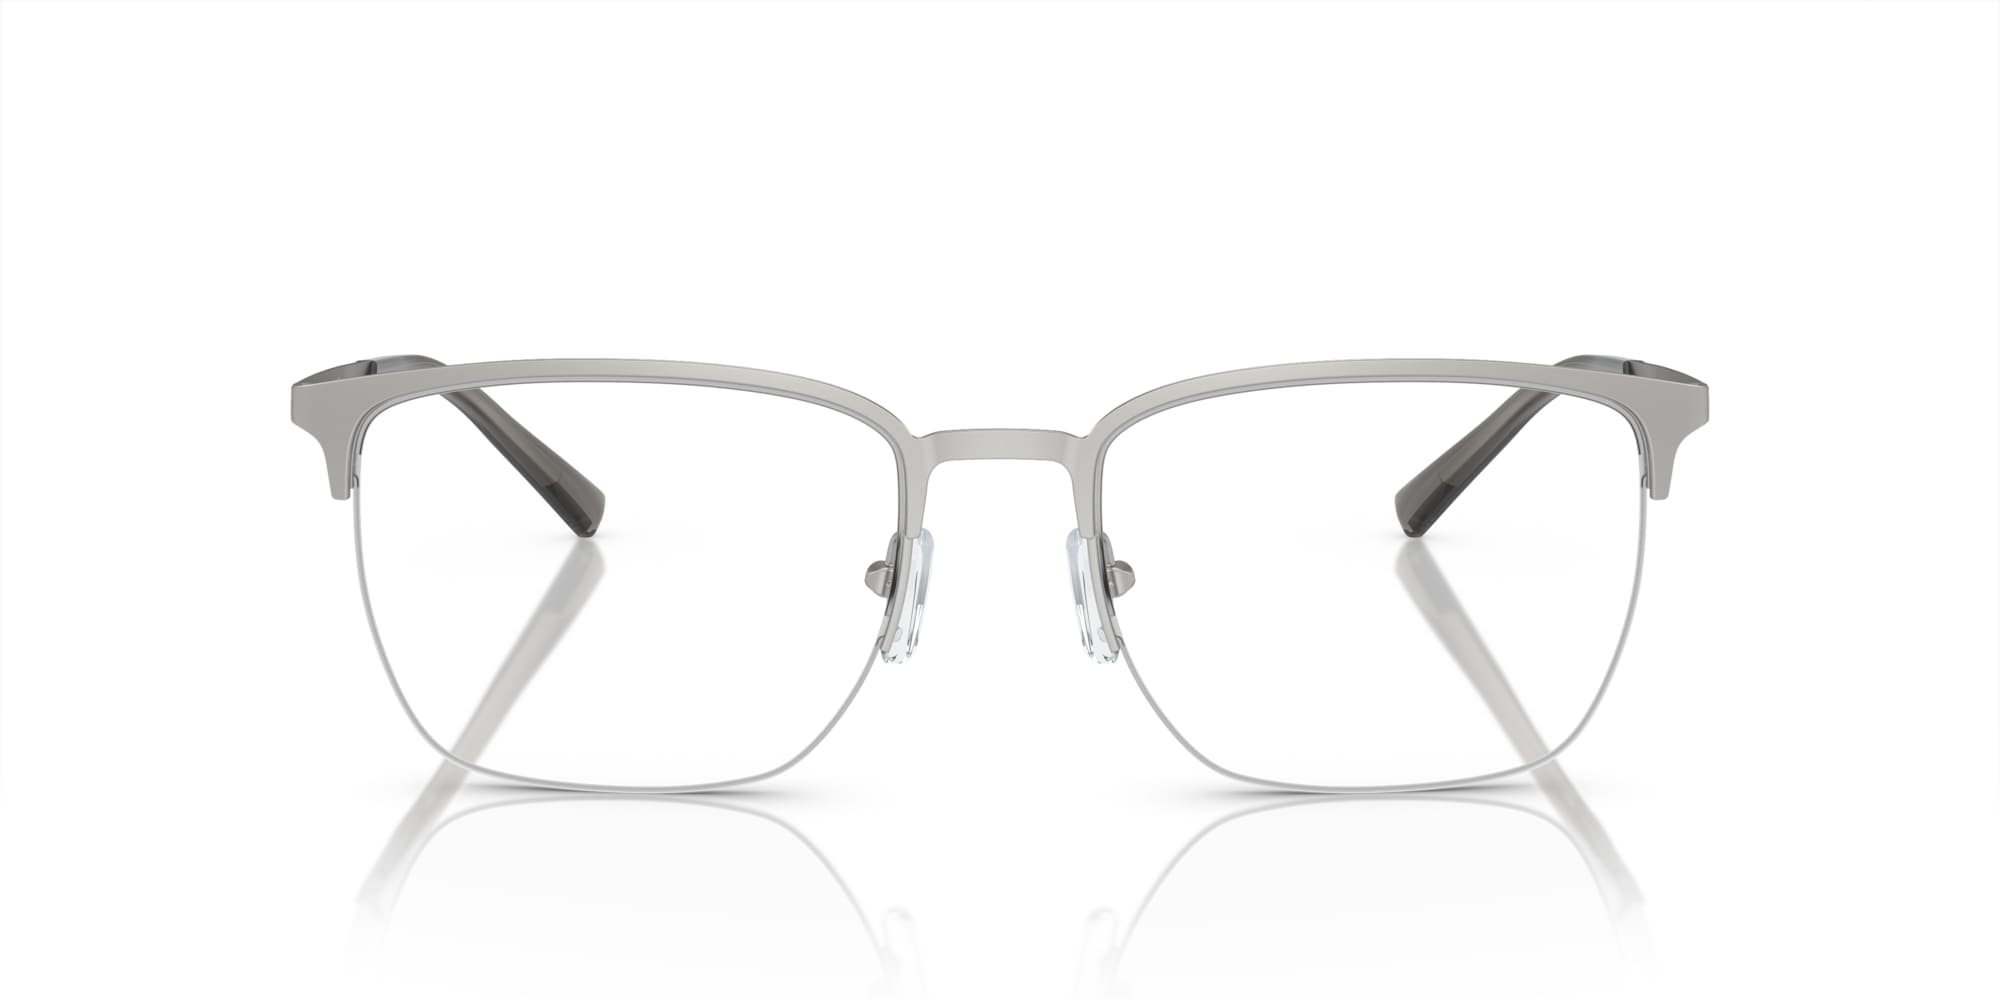 Das Bild zeigt die Korrektionsbrille EA1151 3045 von der Marke Emporio Armani in Silber.